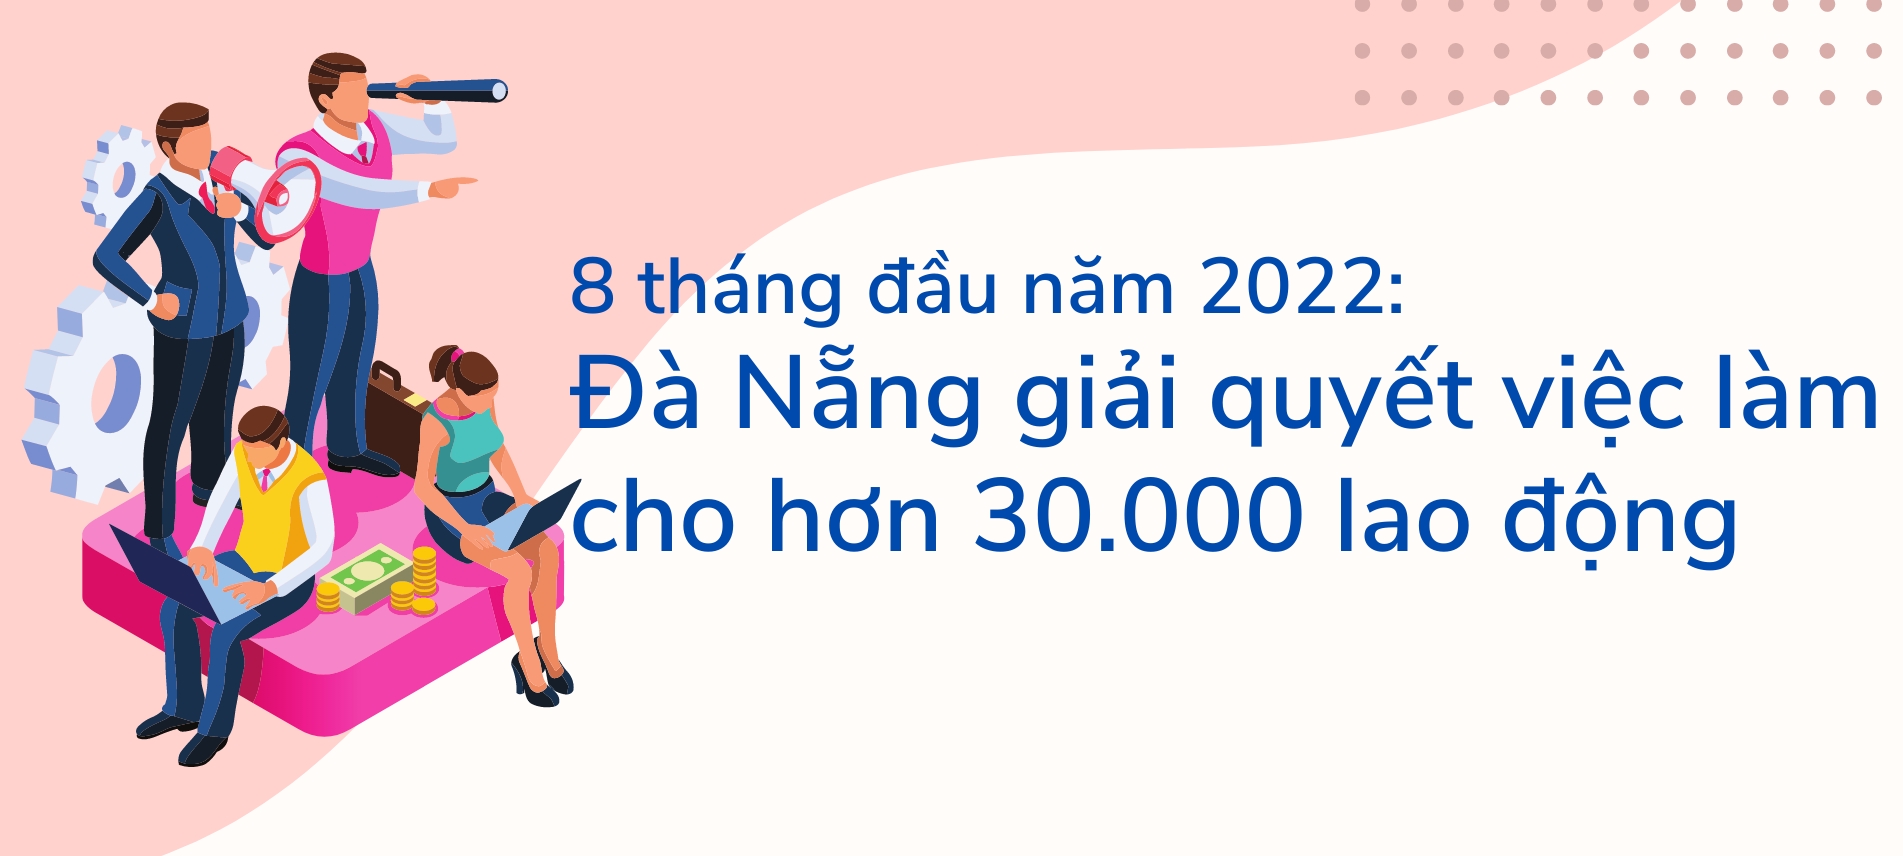 Infographic: Đà Nẵng giải quyết việc làm cho hơn 30.000 lao động